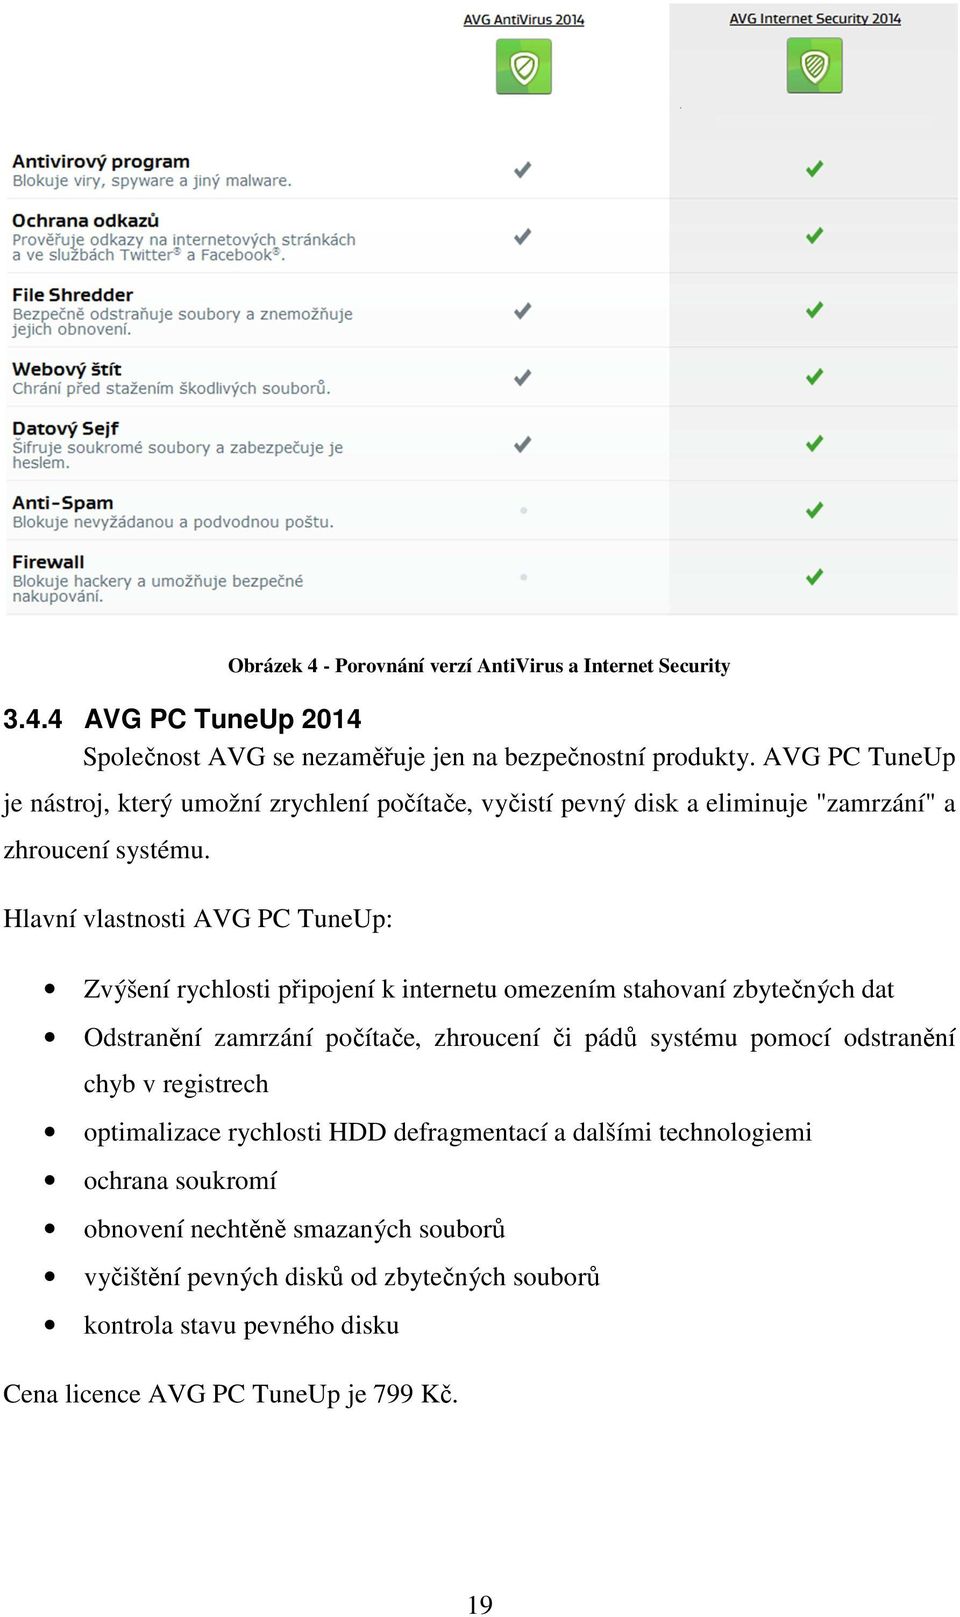 Hlavní vlastnosti AVG PC TuneUp: Zvýšení rychlosti připojení k internetu omezením stahovaní zbytečných dat Odstranění zamrzání počítače, zhroucení či pádů systému pomocí